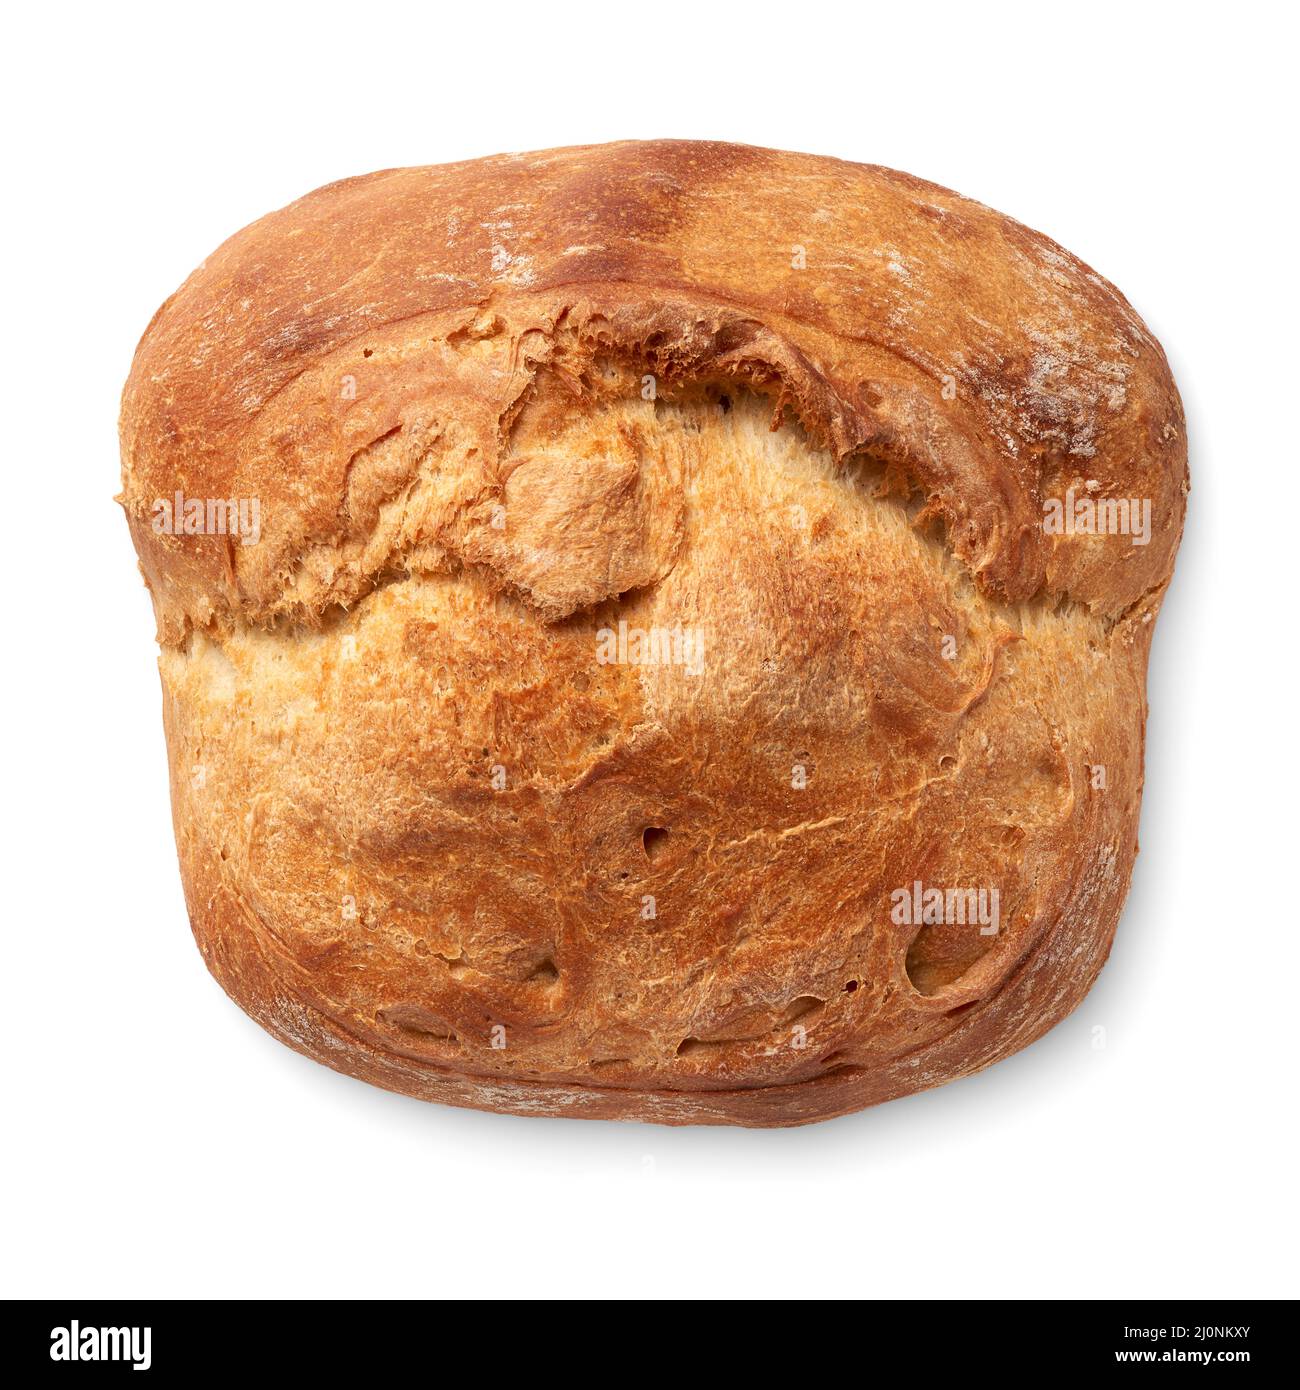 Tradizionale pane di grano fatto in casa, isolato su sfondo bianco Foto Stock